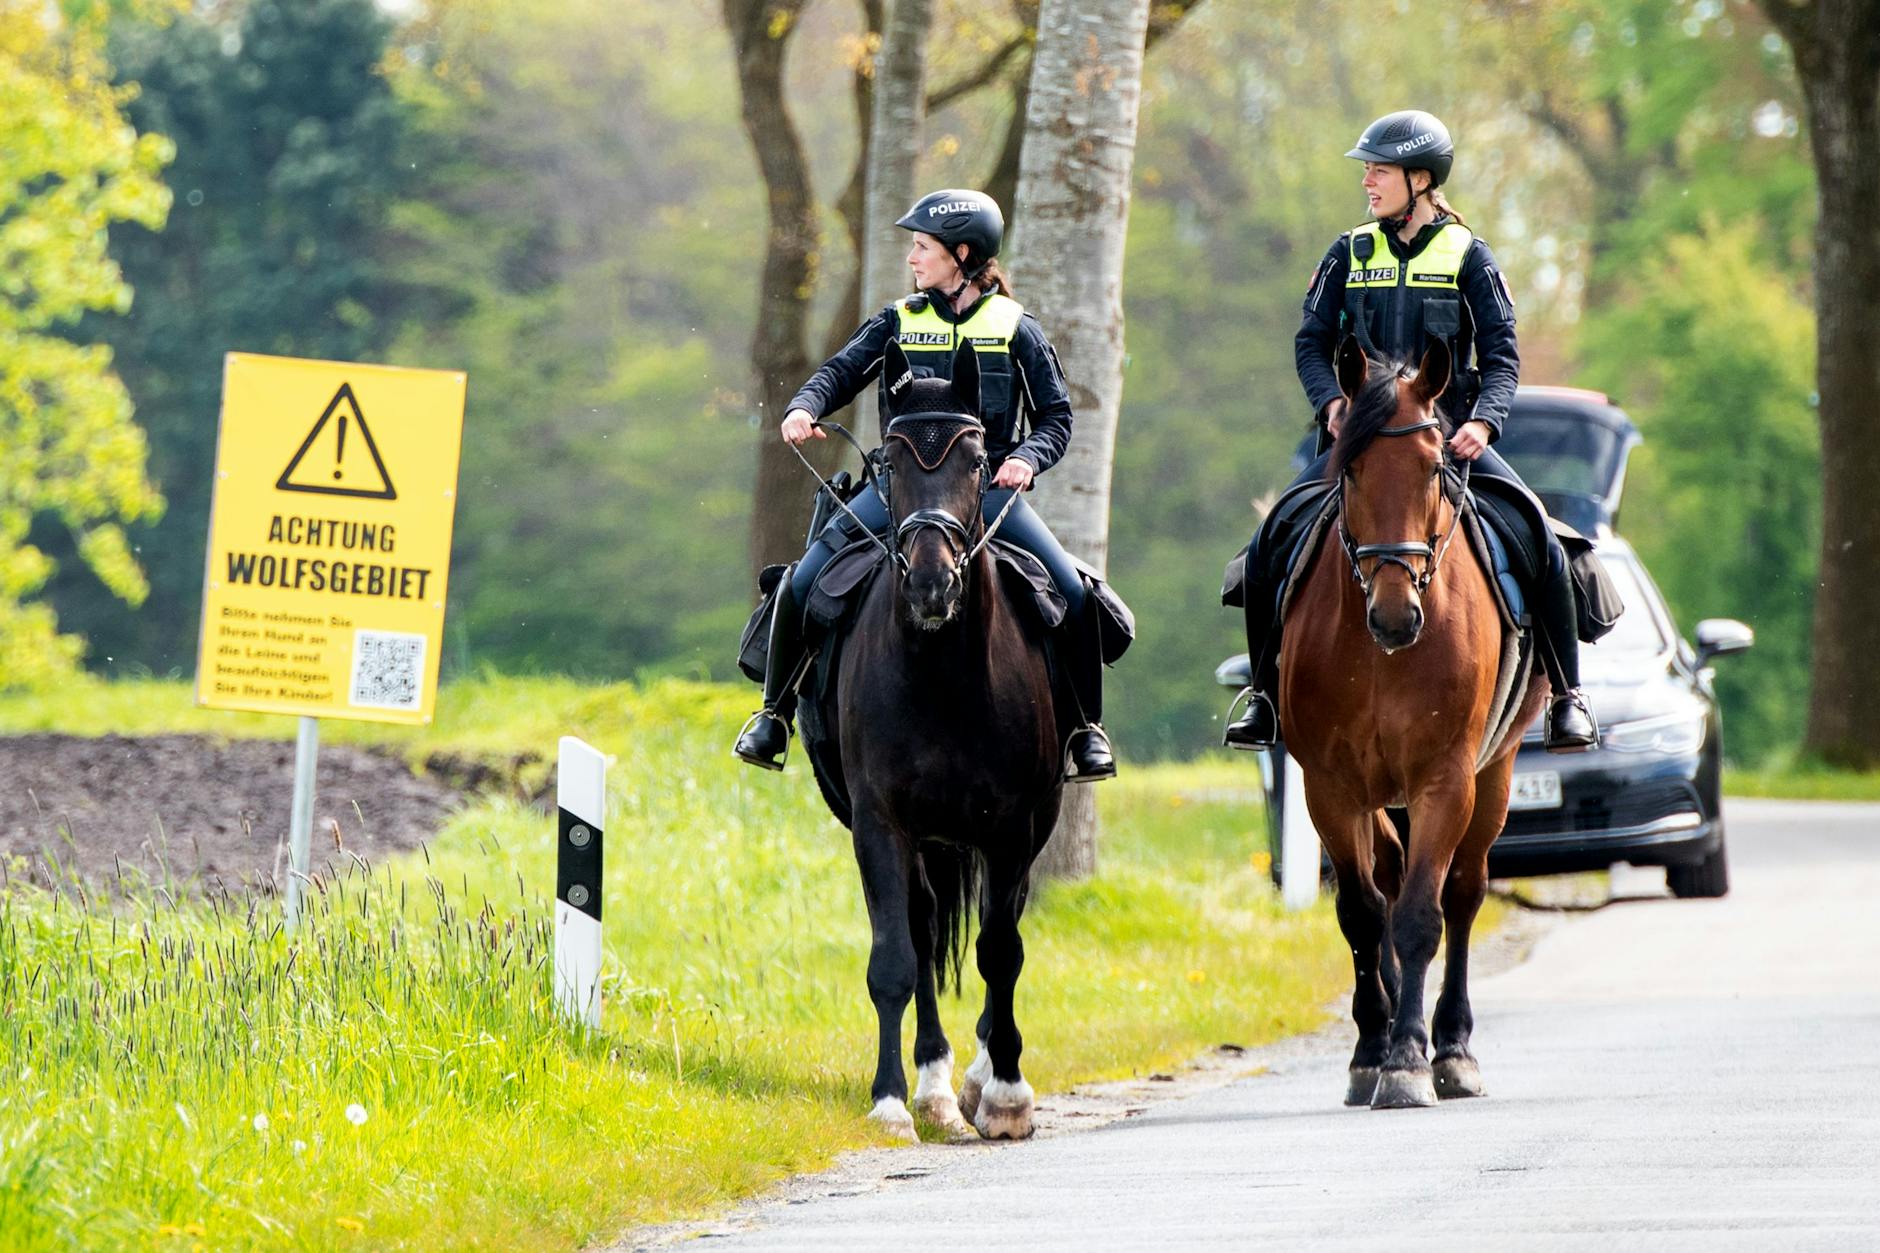 Hüttenberg: Zwei Polizistinnen auf Pferden suchen in der Nähe eines Wolfsgebietes nach dem vermissten Arian.